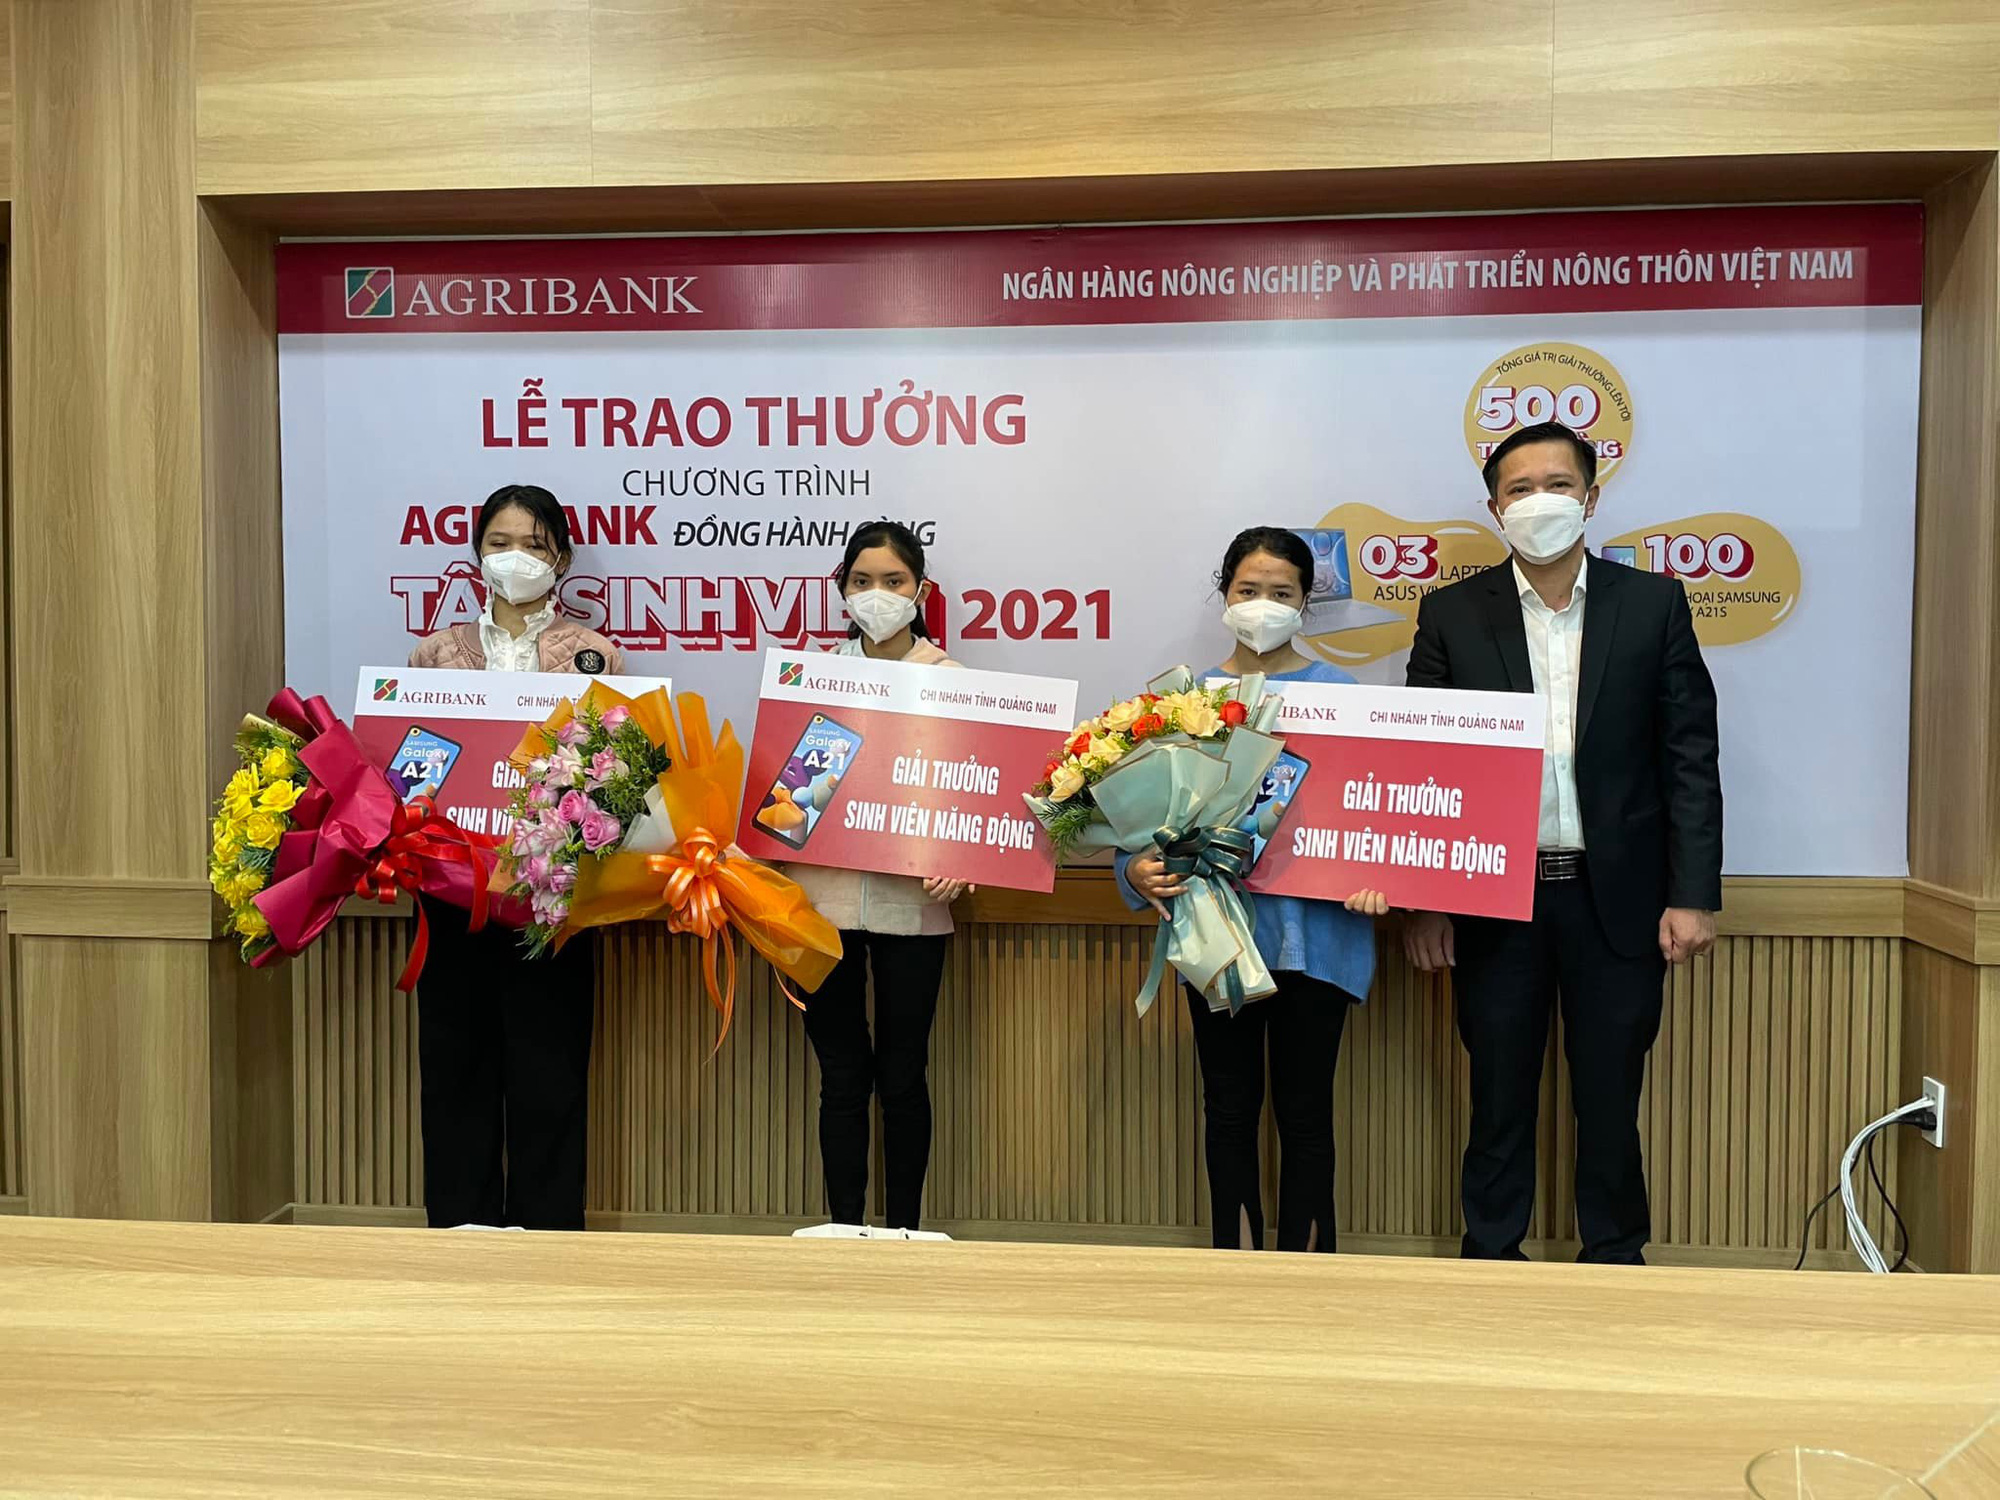 Agribank Quảng Nam trao thưởng Chương trình “Agribank đồng hành cùng Tân sinh viên 2021” - Ảnh 1.